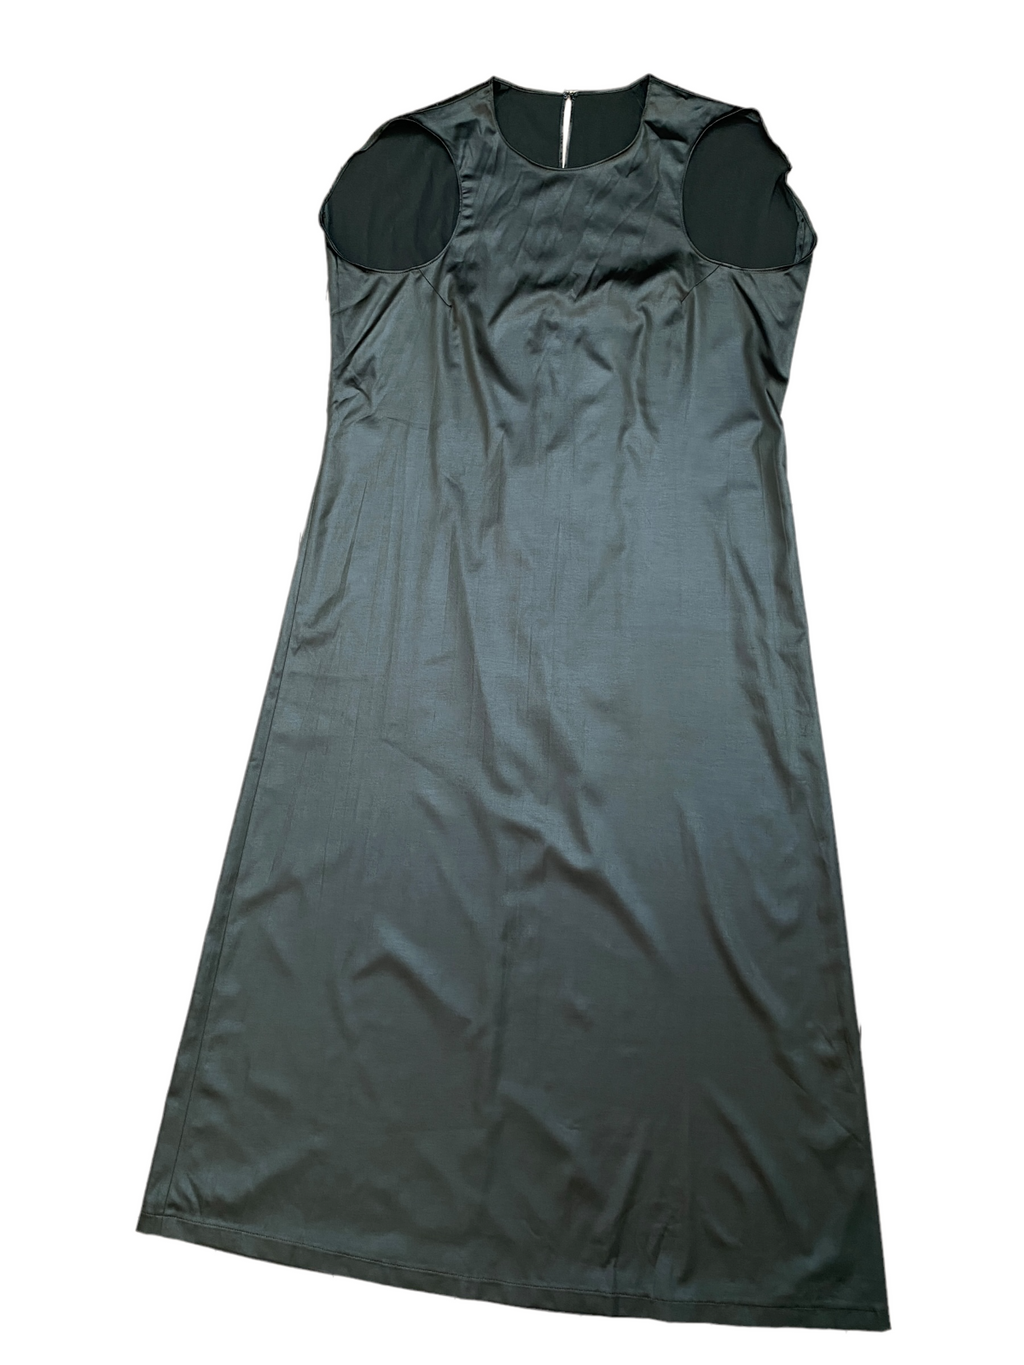 A/W 1998  Elongated Flat Dress